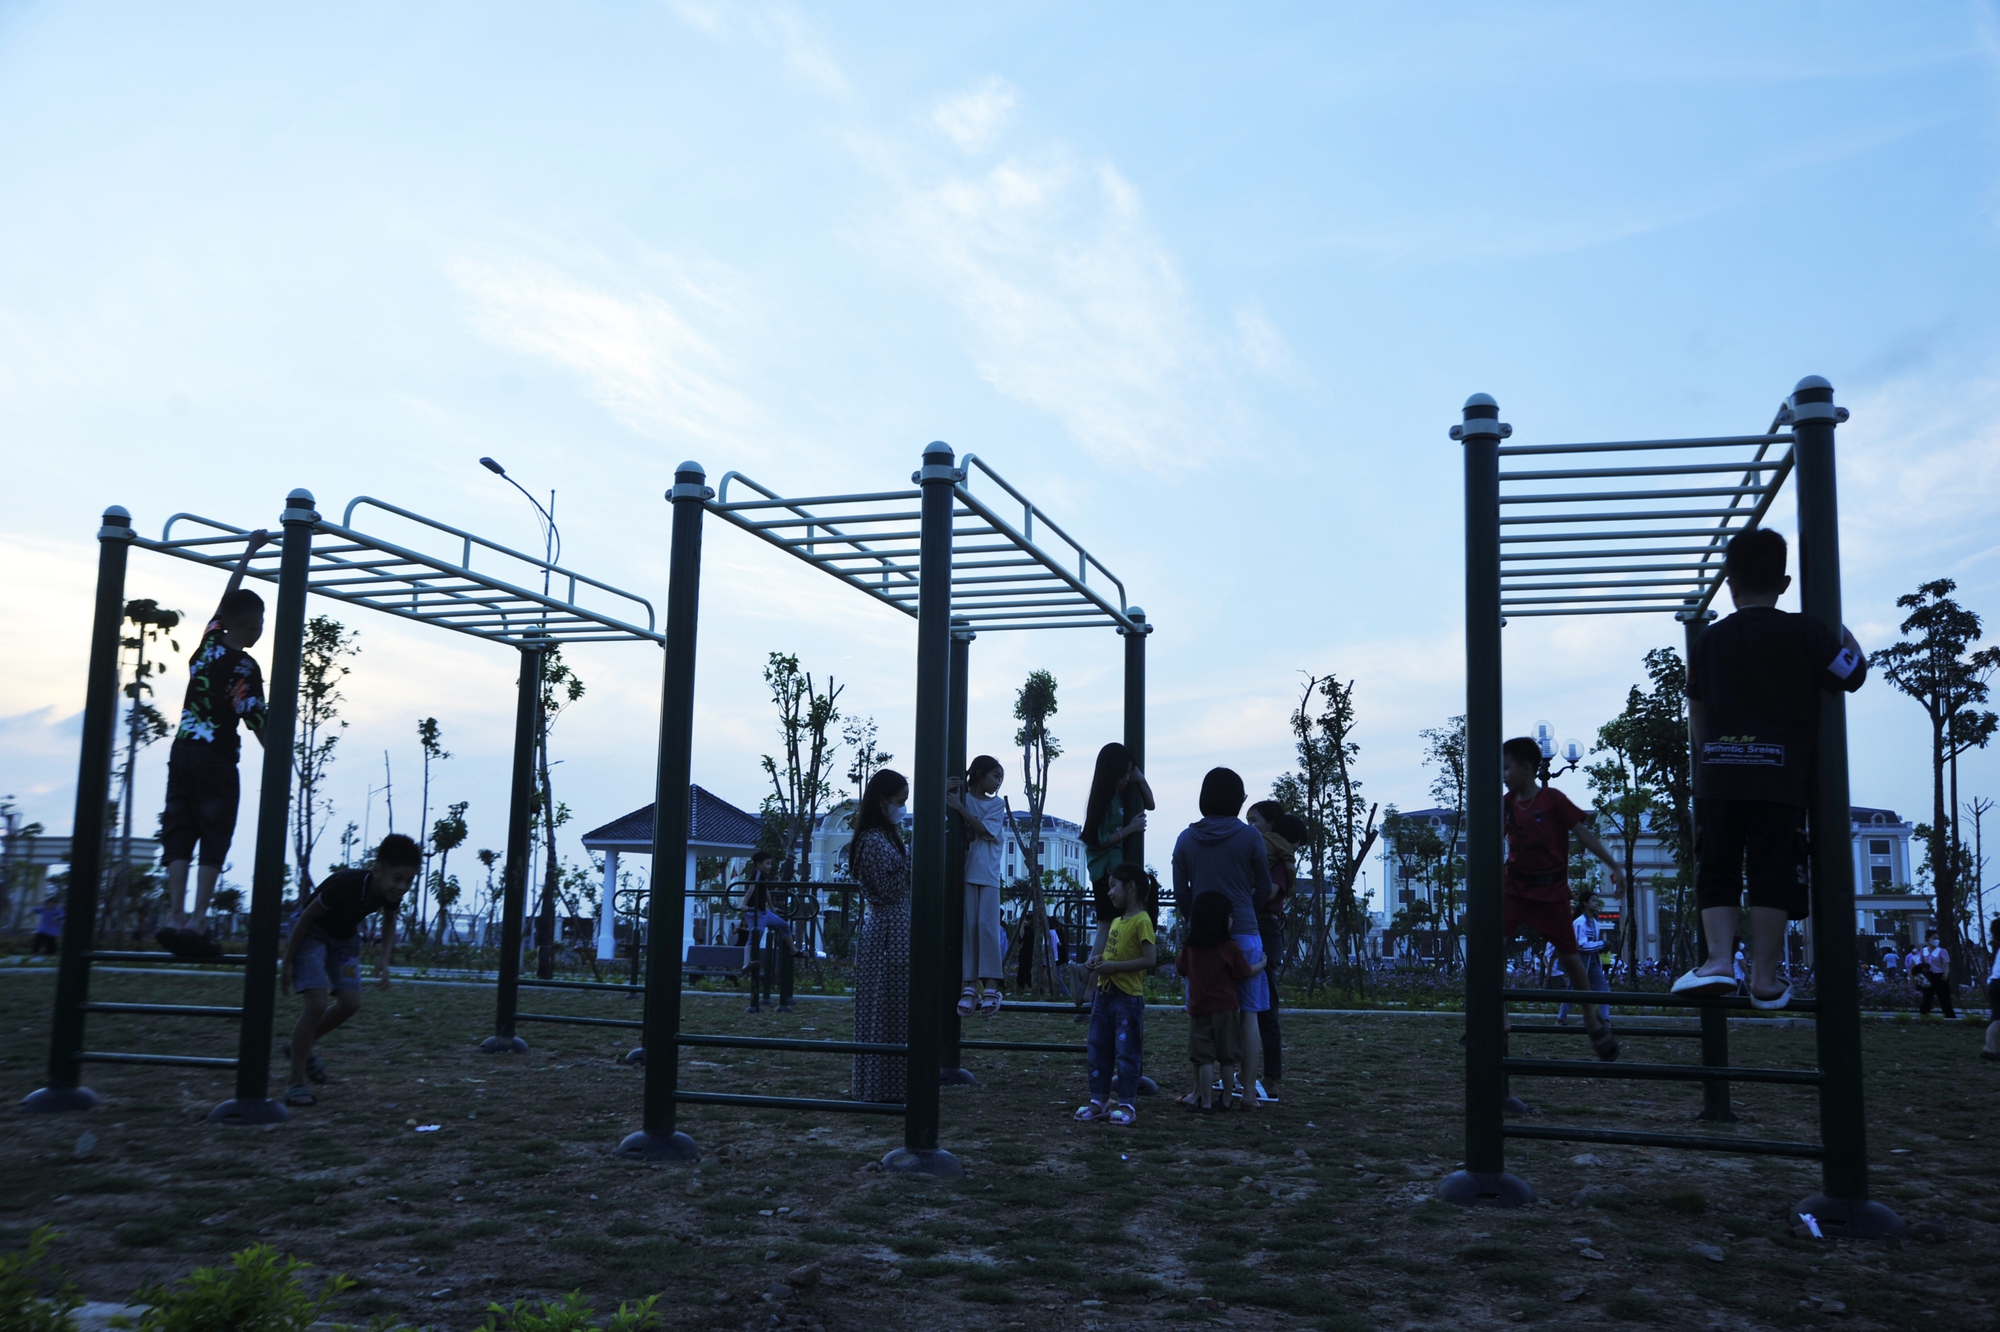 Khu thể dục thể thao: kết hợp giữa các khoảng không gian trồng cỏ và sân bê tông lát gạch sân vườn nhằm tạo các không gian vui chơi độc lập, kết hợp với các khu dịch vụ công cộng.